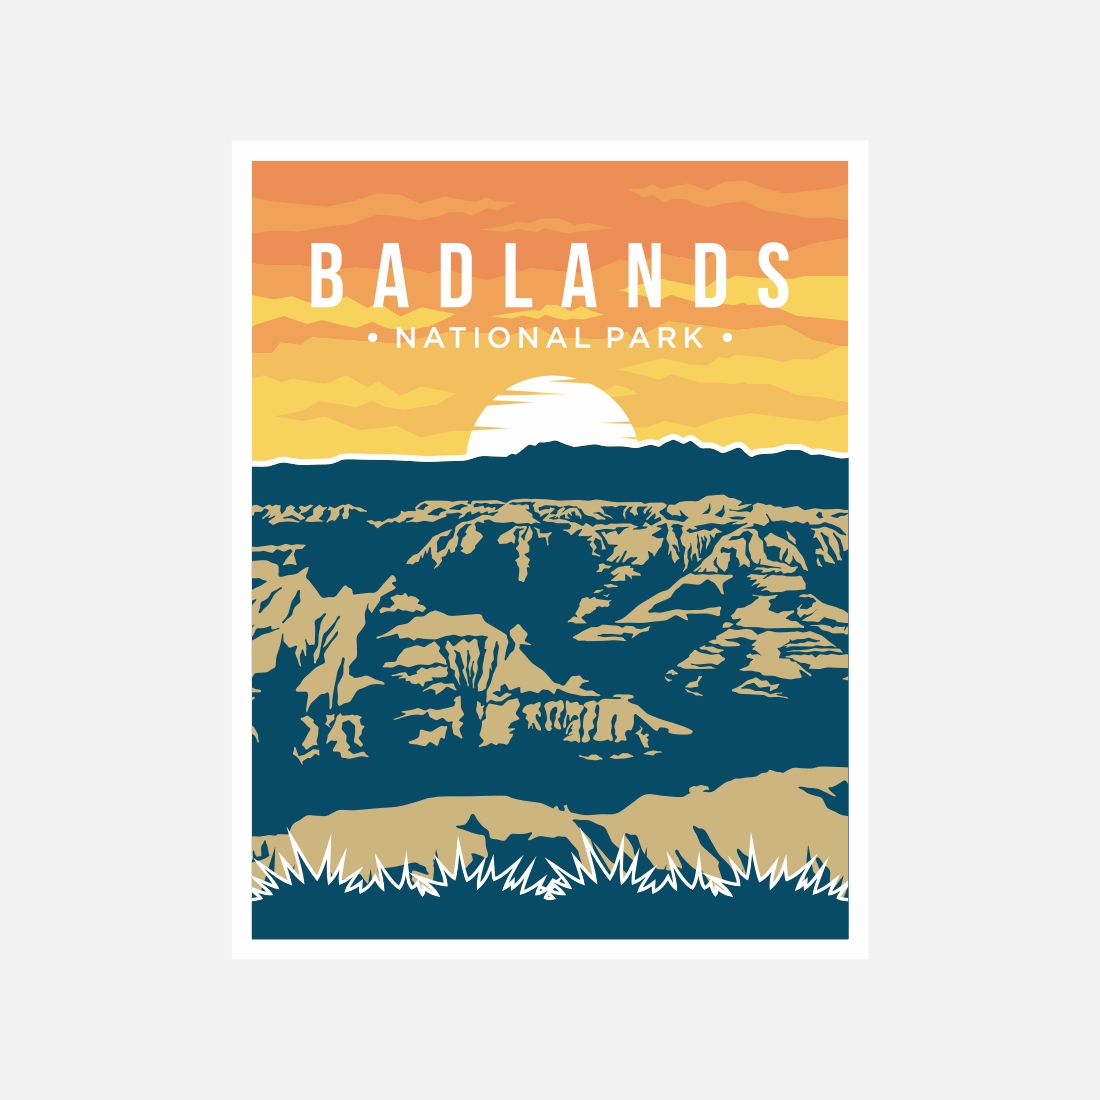 Badlands National Park poster vector illustration design - only $8 preview image.